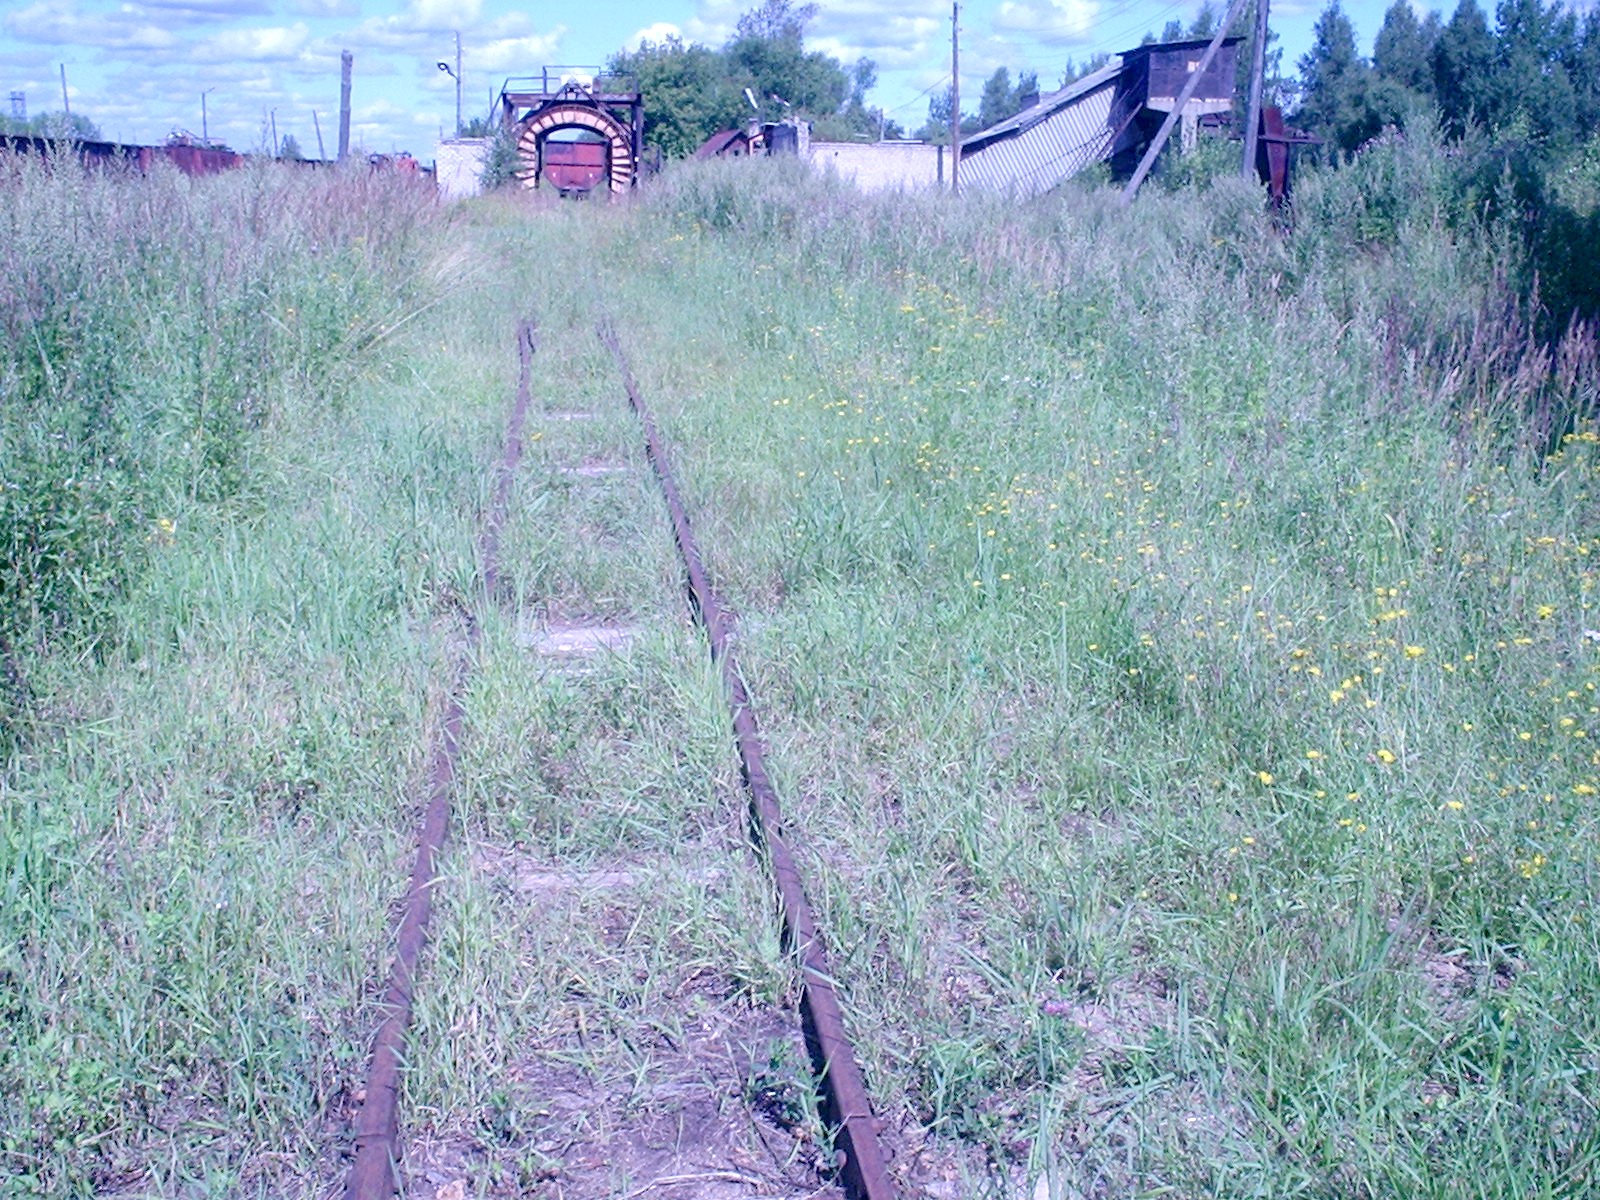 Узкоколейная железная дорога Васильевского предприятия промышленного железнодорожного транспорта  — фотографии, сделанные в 2005 году (часть 9)